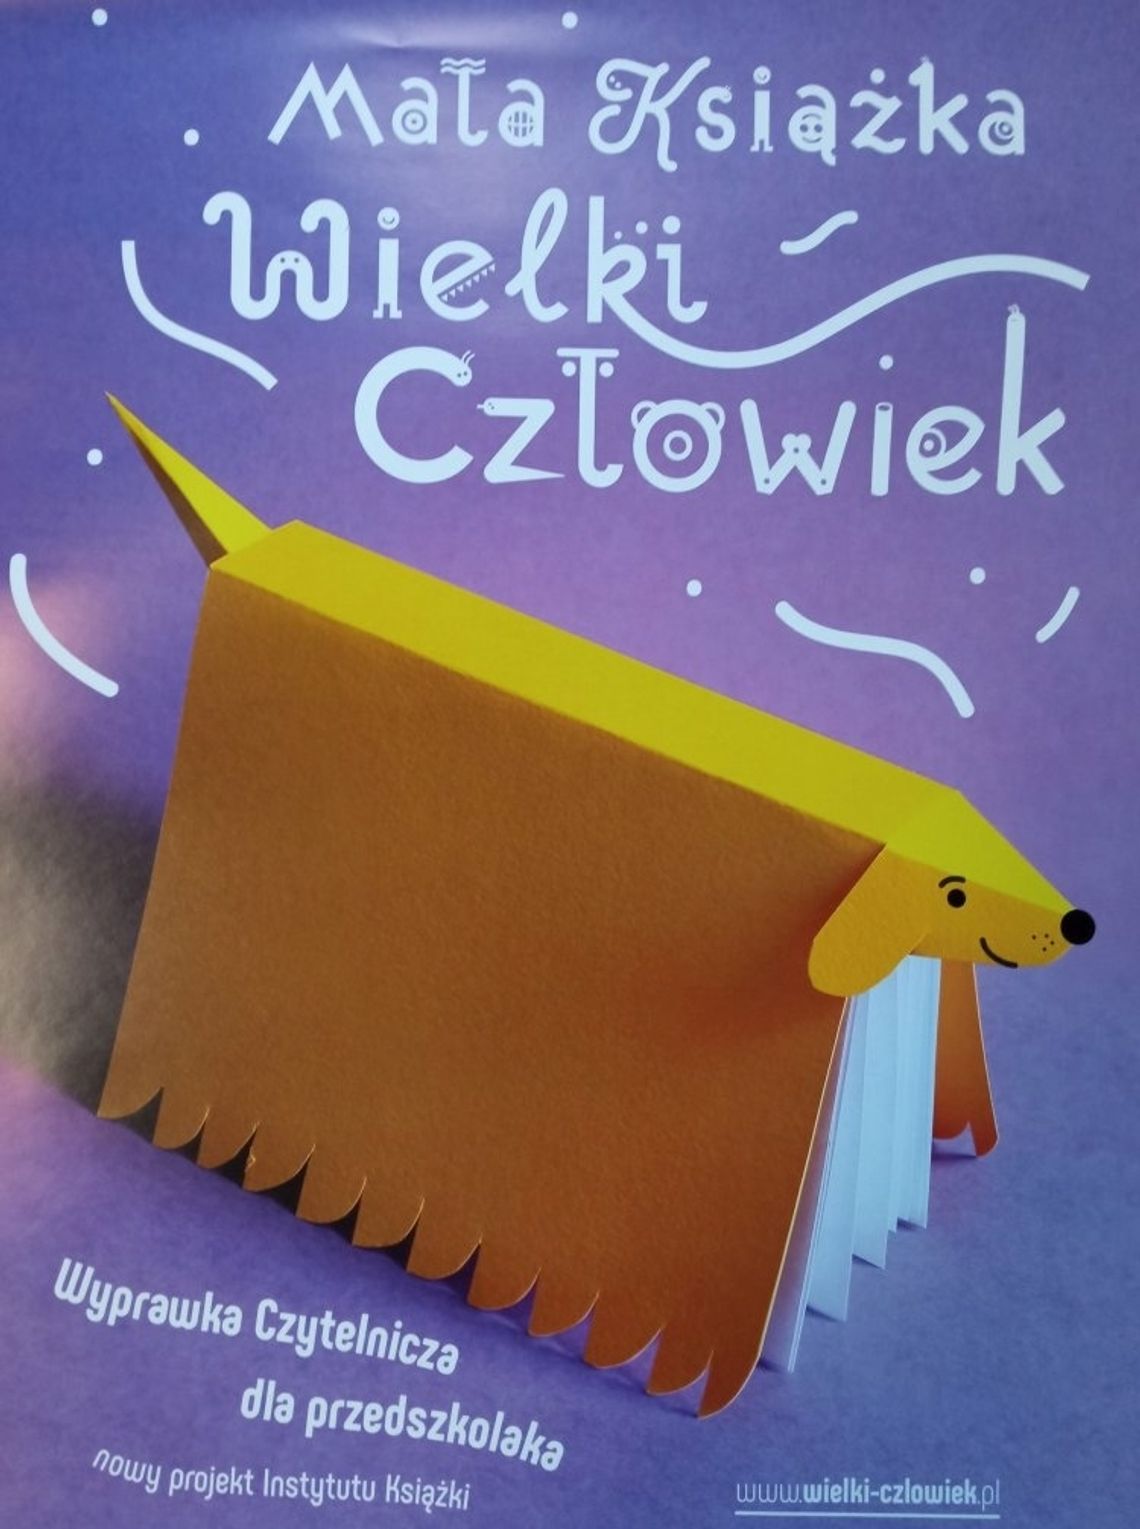 Biblioteka Pedagogiczna w Chełmie bierze udział w kolejnej edycji projektu Mała Książka – Wielki Człowiek.